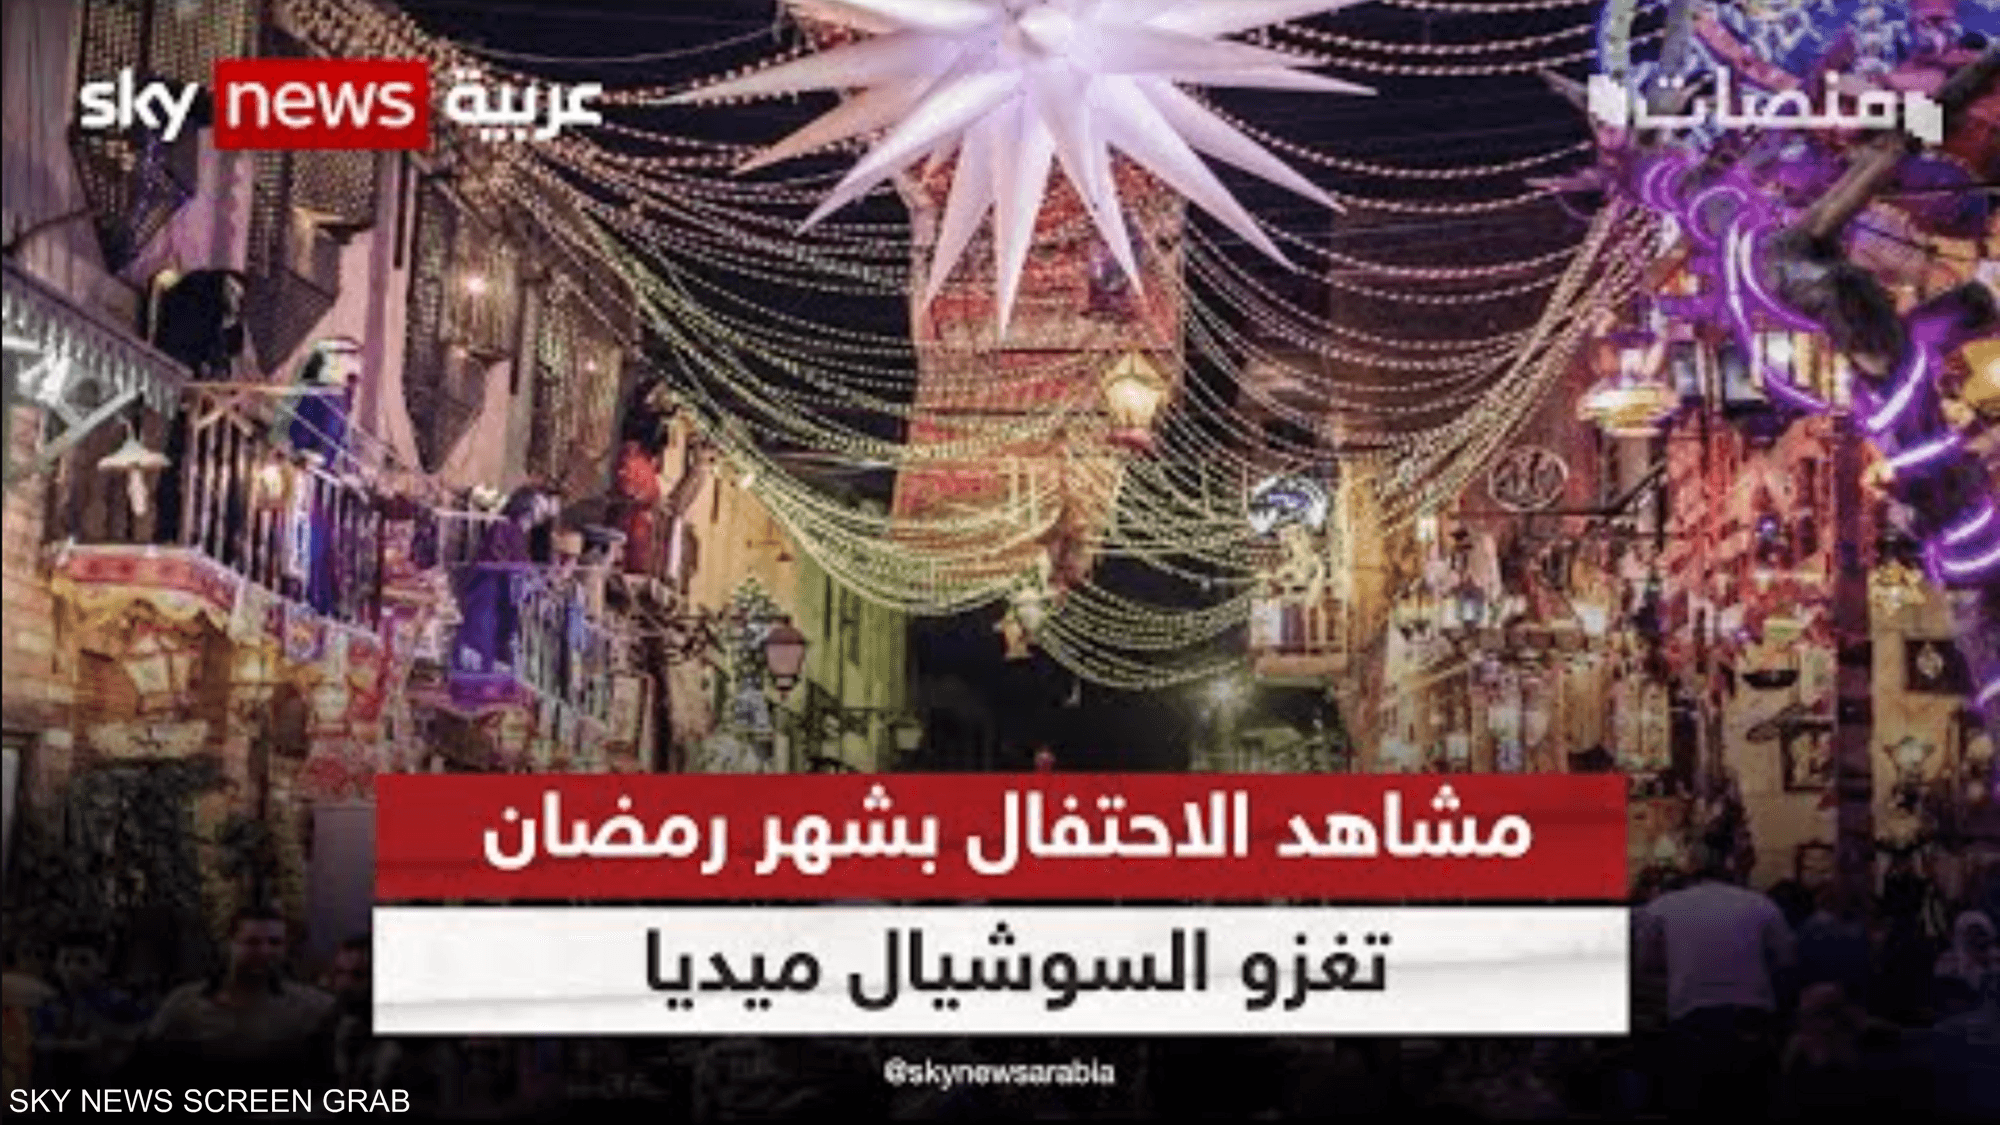 مشاهد الاحتفال بشهر رمضان تغزو السوشال ميديا من دول عربية